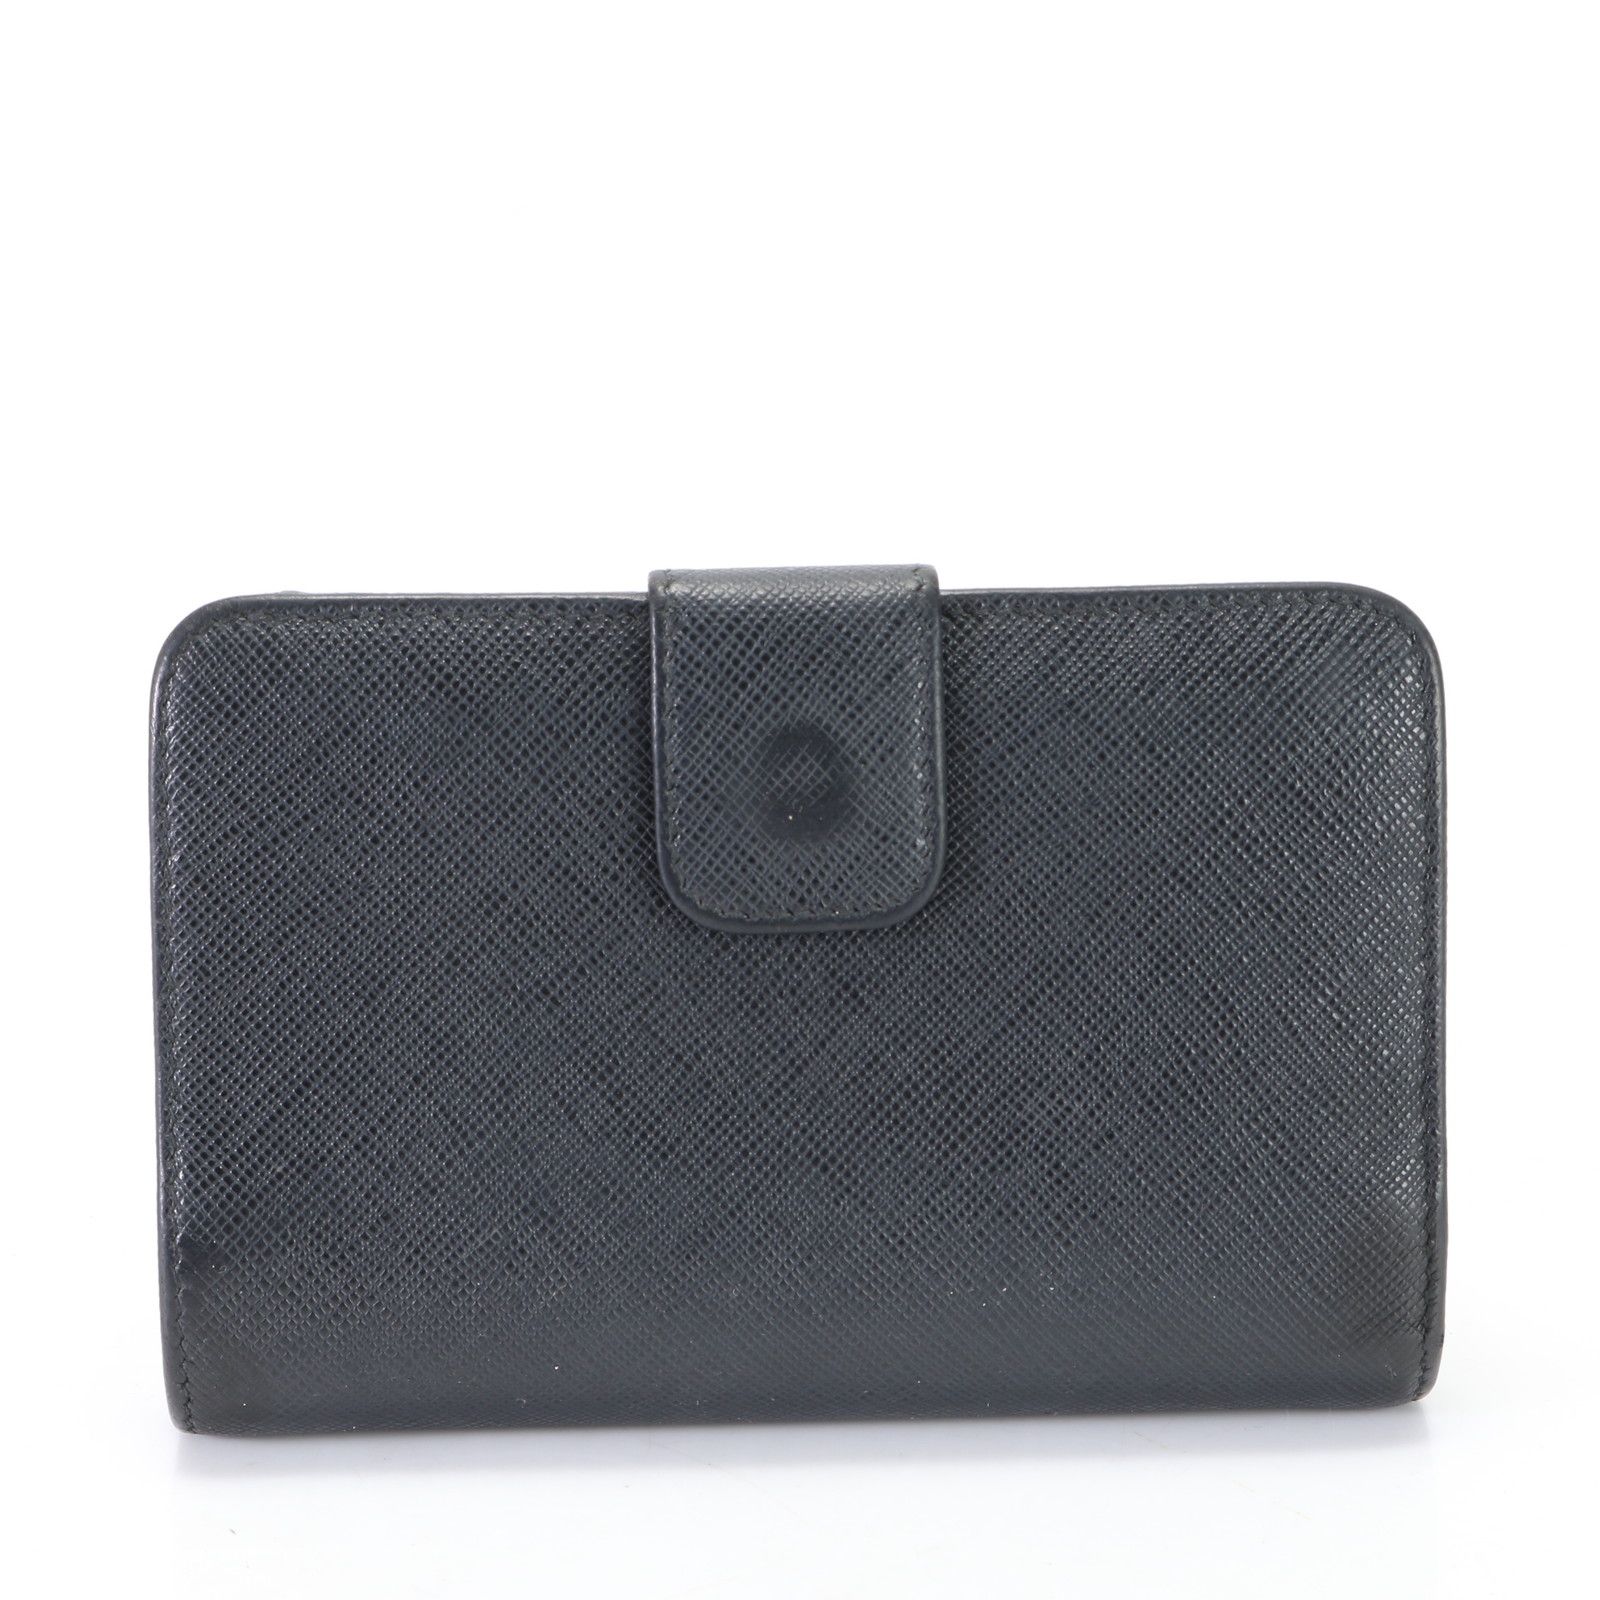 美品 プラダ サフィアーノ レザー 二つ折り 財布 本革 ウォレット ロゴ ブラック 黒 婦人 レディース EHM K14-9